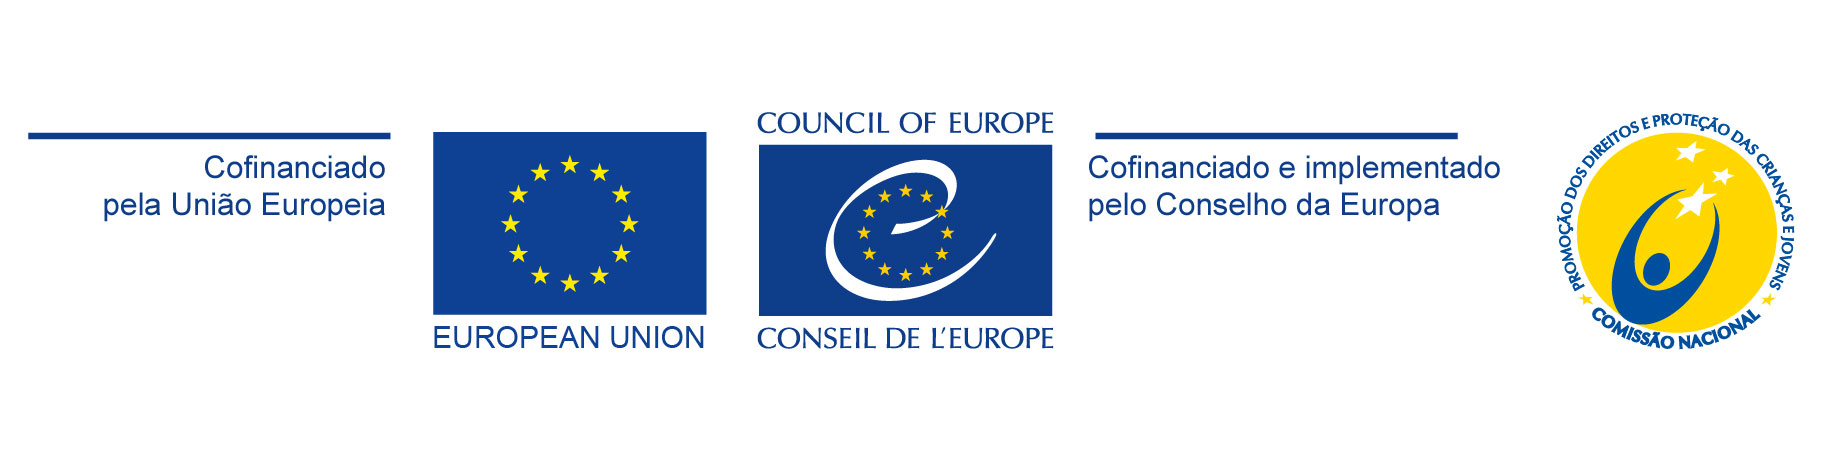 barra de logos cp4europe